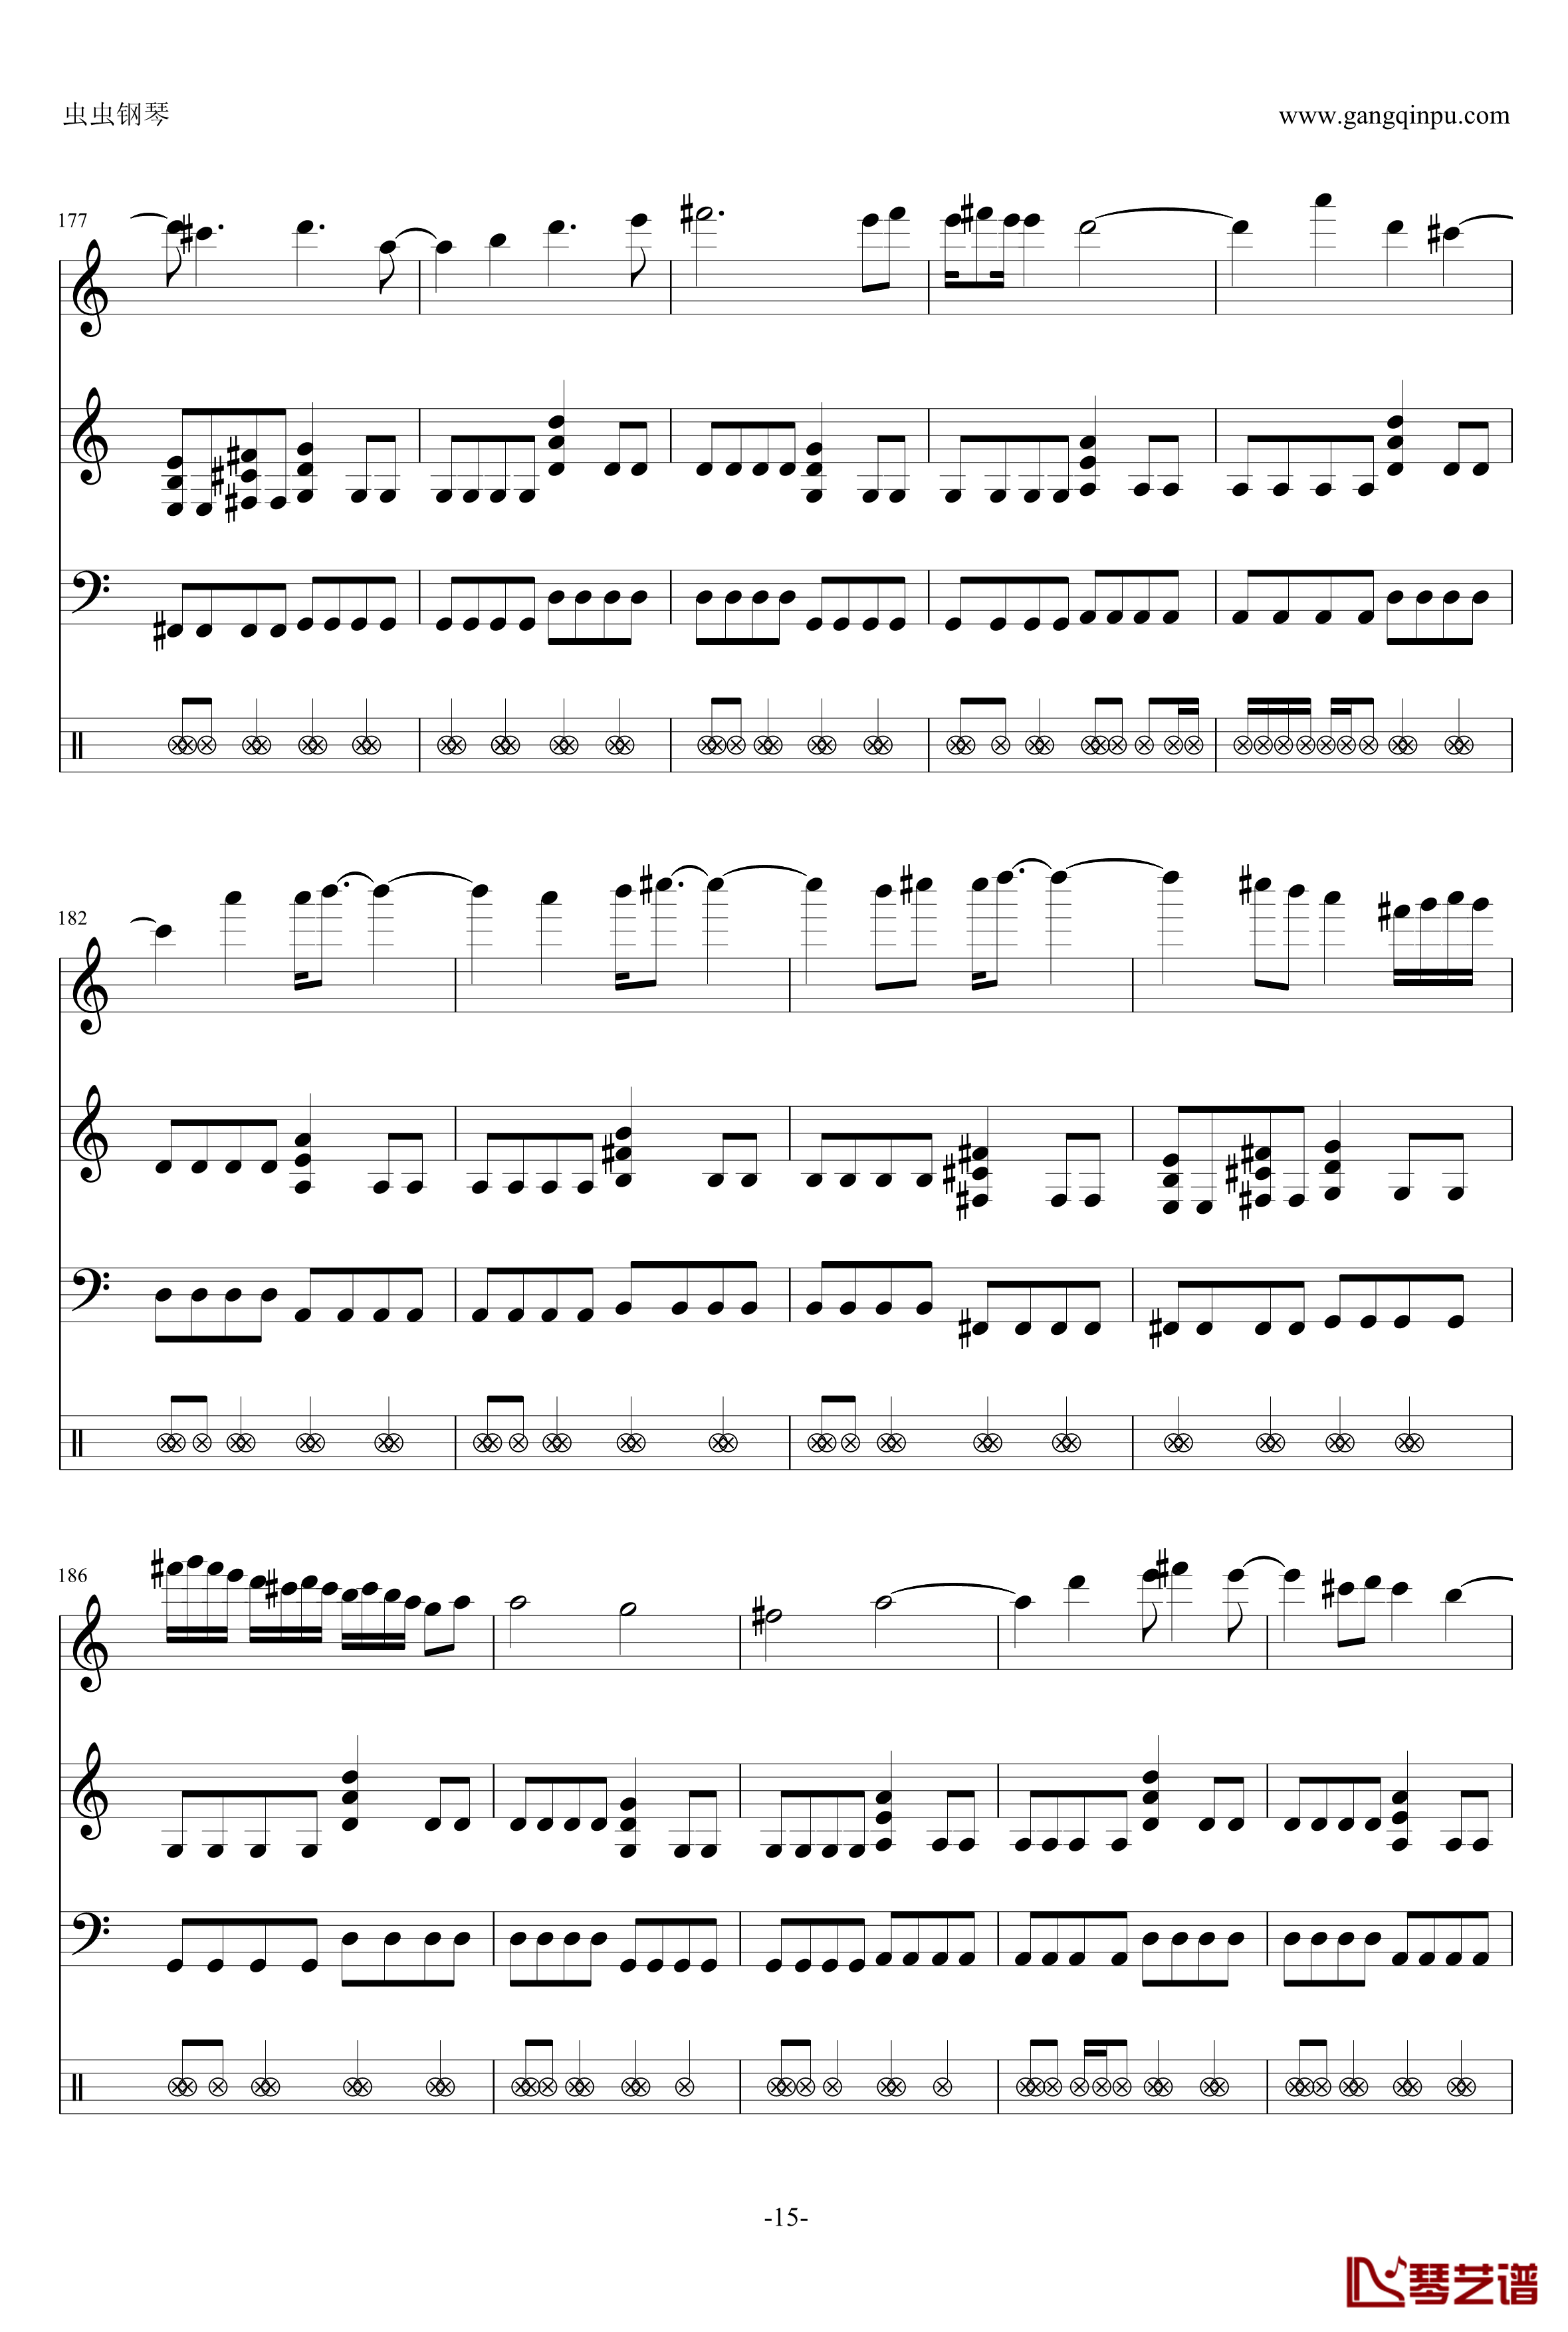 钢琴摇滚卡农钢琴谱-帕赫贝尔-Pachelbel15